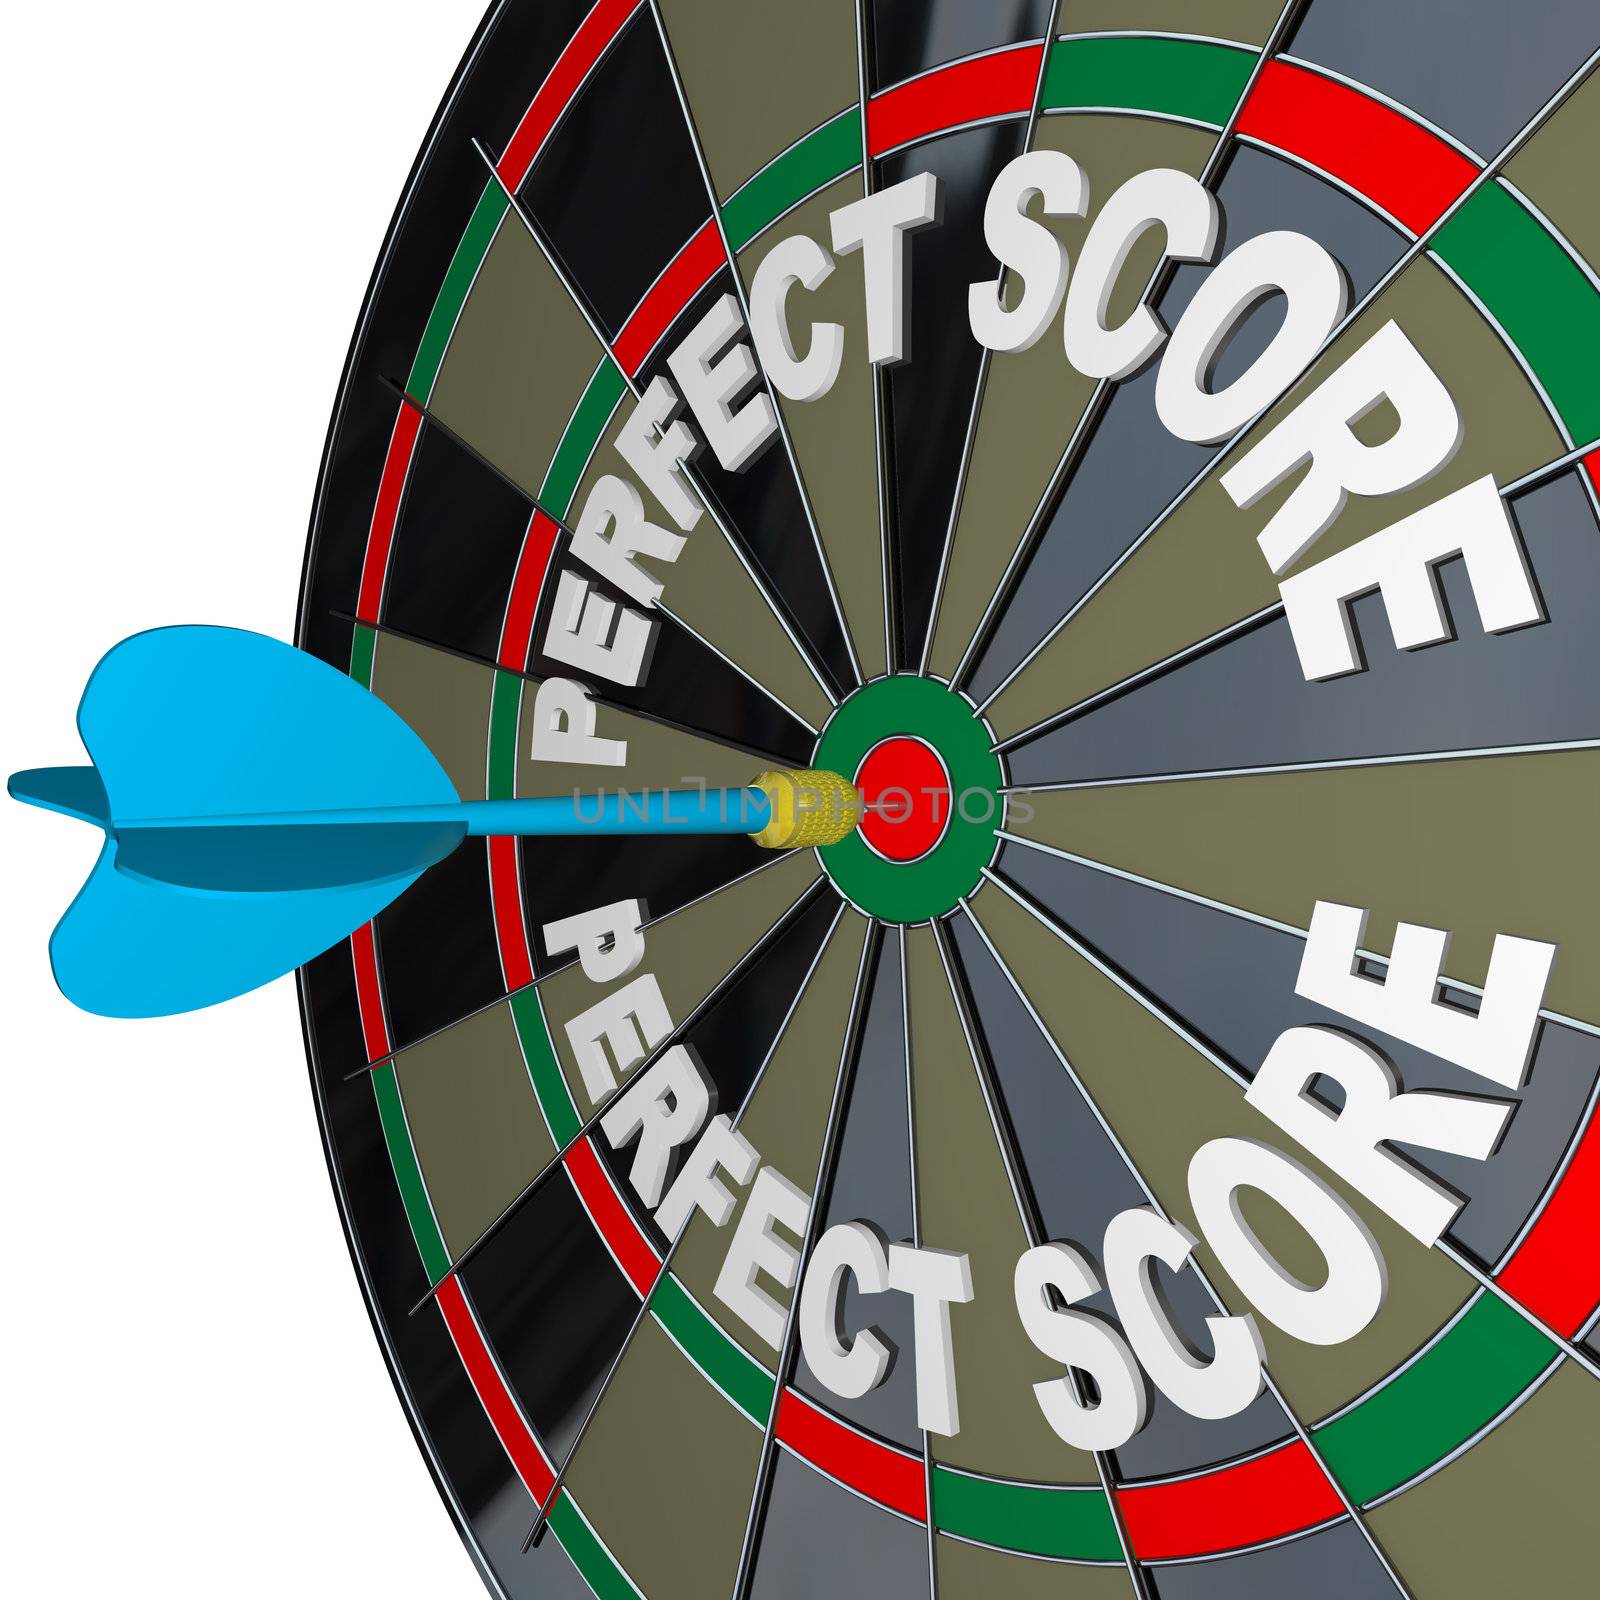 Perfect Score Words Dart on Dartboard Winner by iQoncept